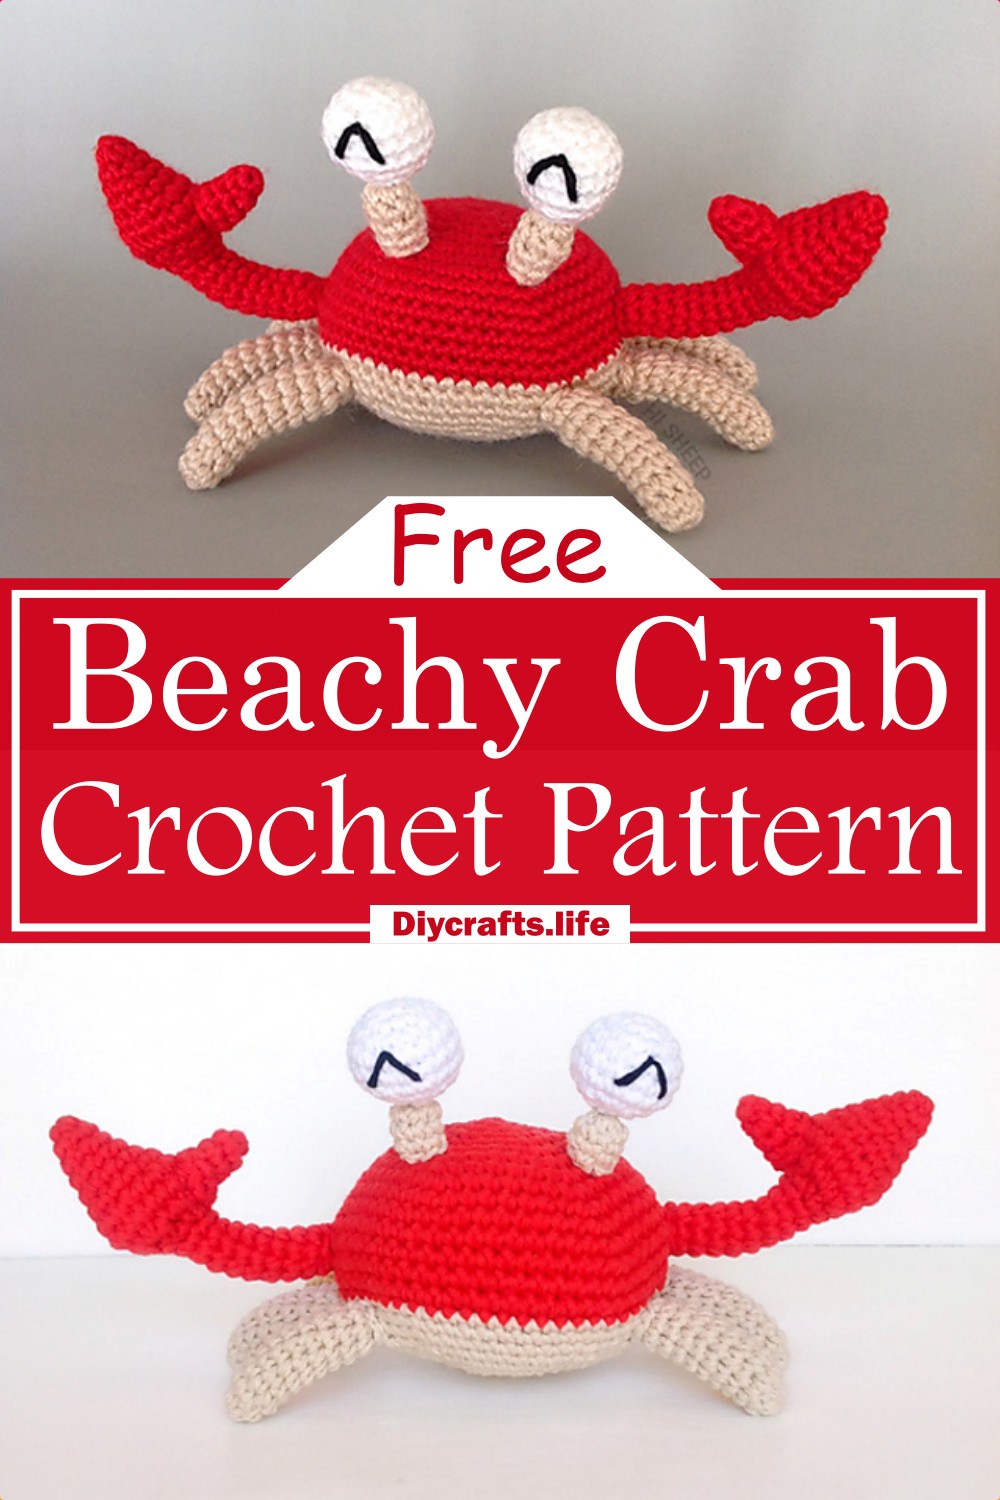 Beachy Crab